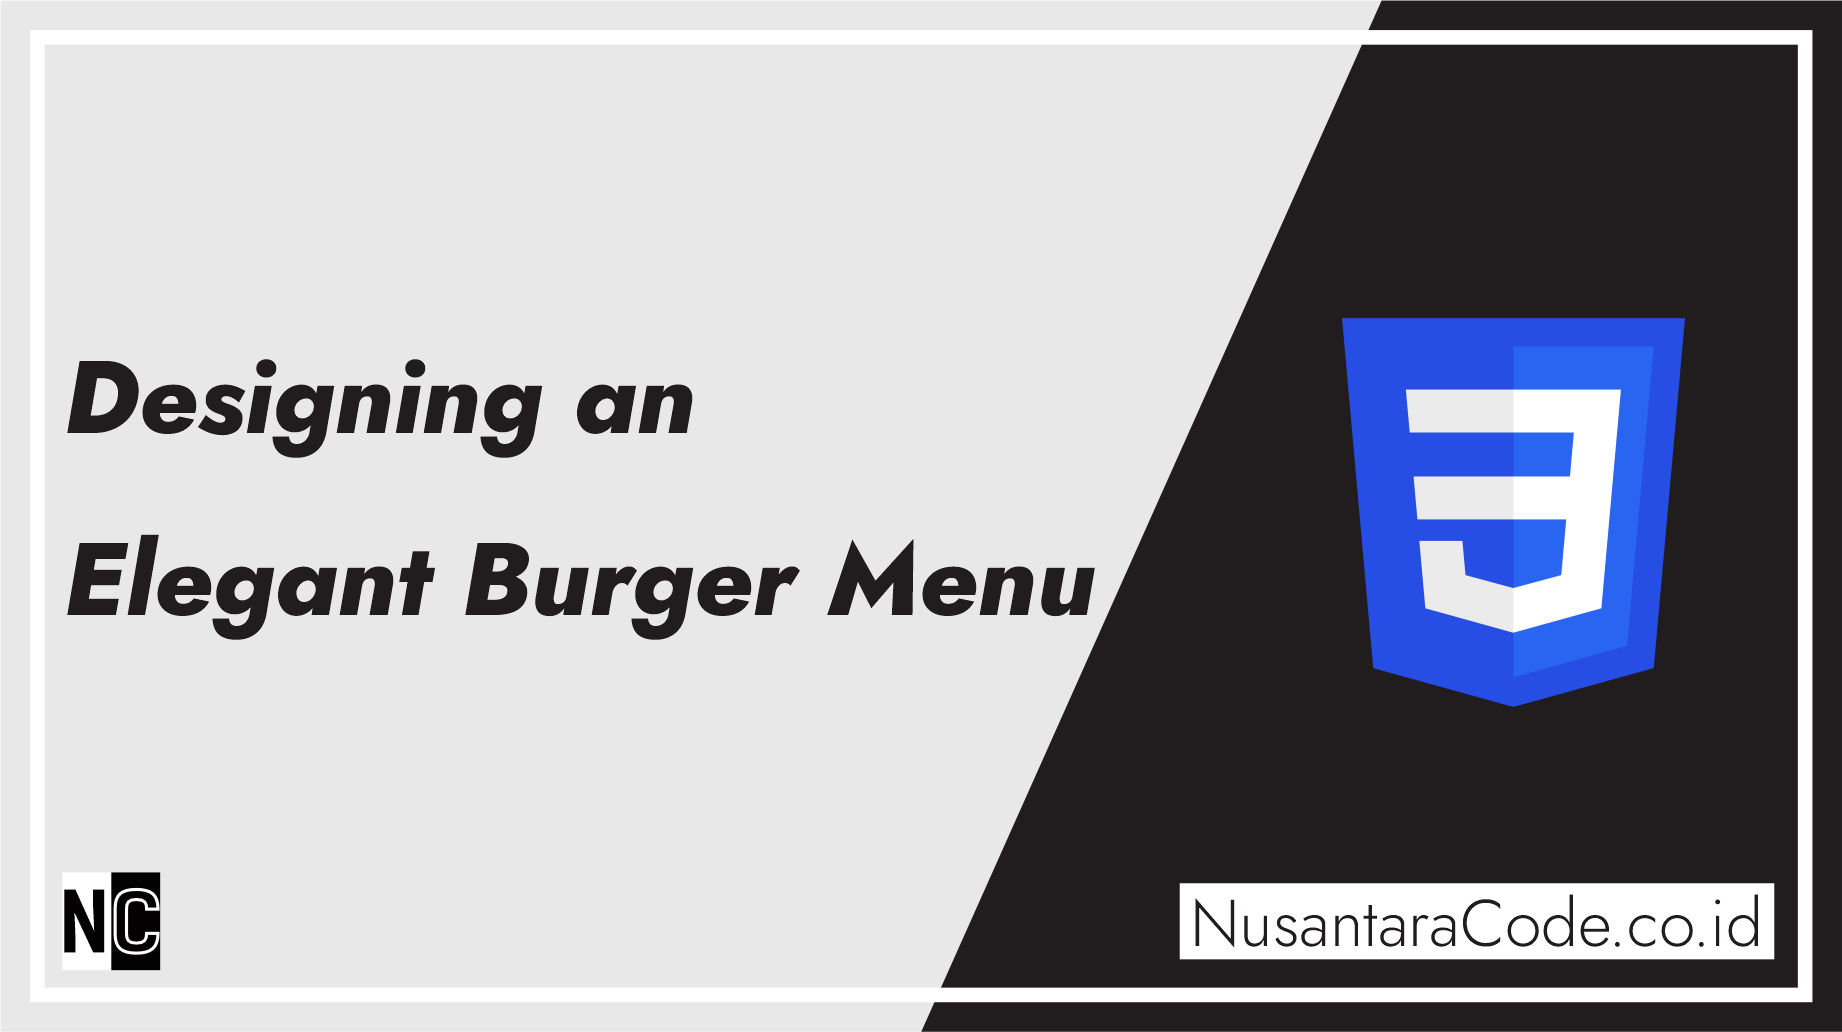 Designing an Elegant Burger Menu